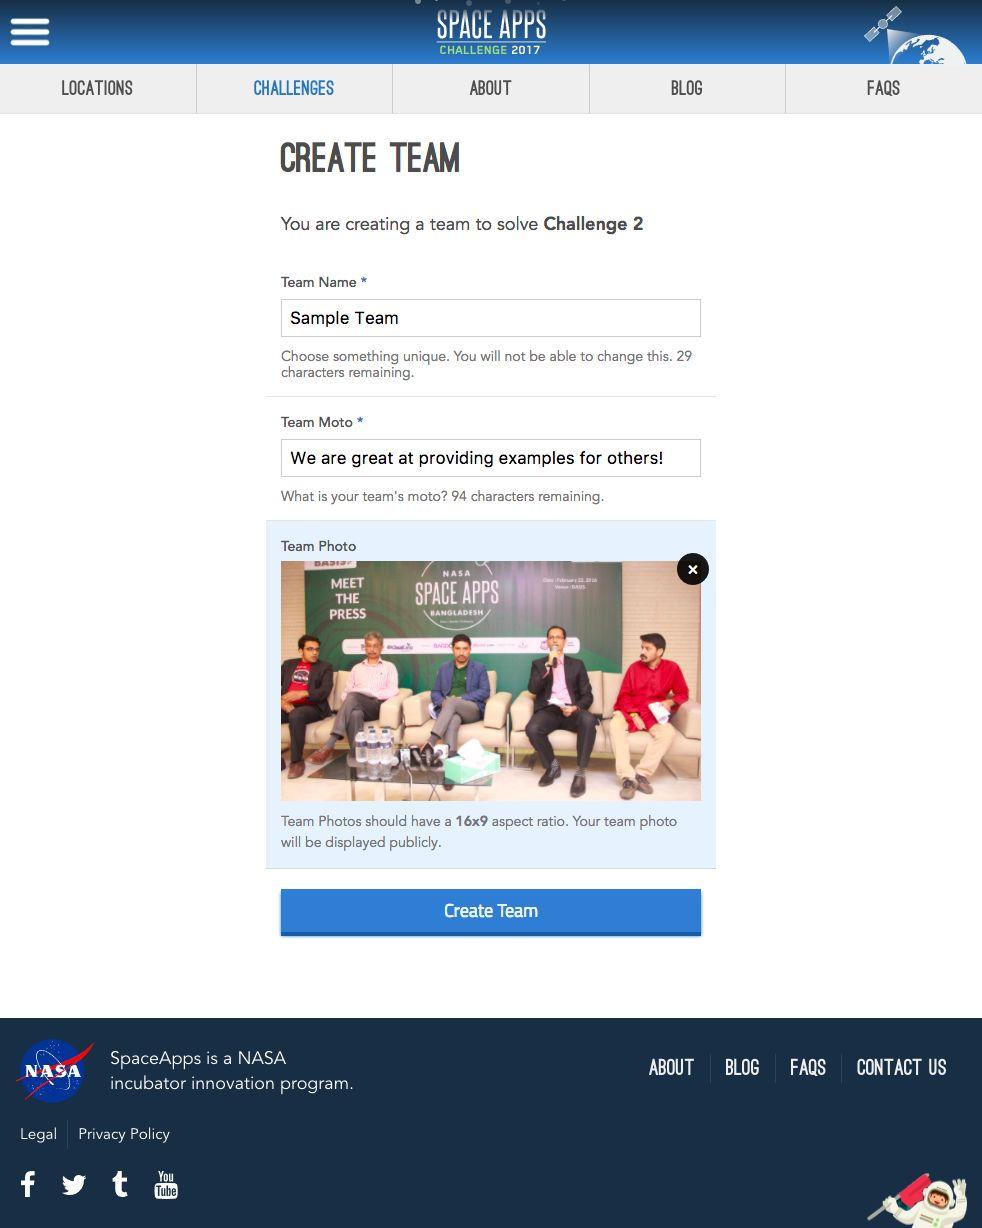 Los posibles miembros del equipo podrán ver los equipos creados en spaceappschallenge.org y solicitar unirse a un equipo (arriba, izquierda).